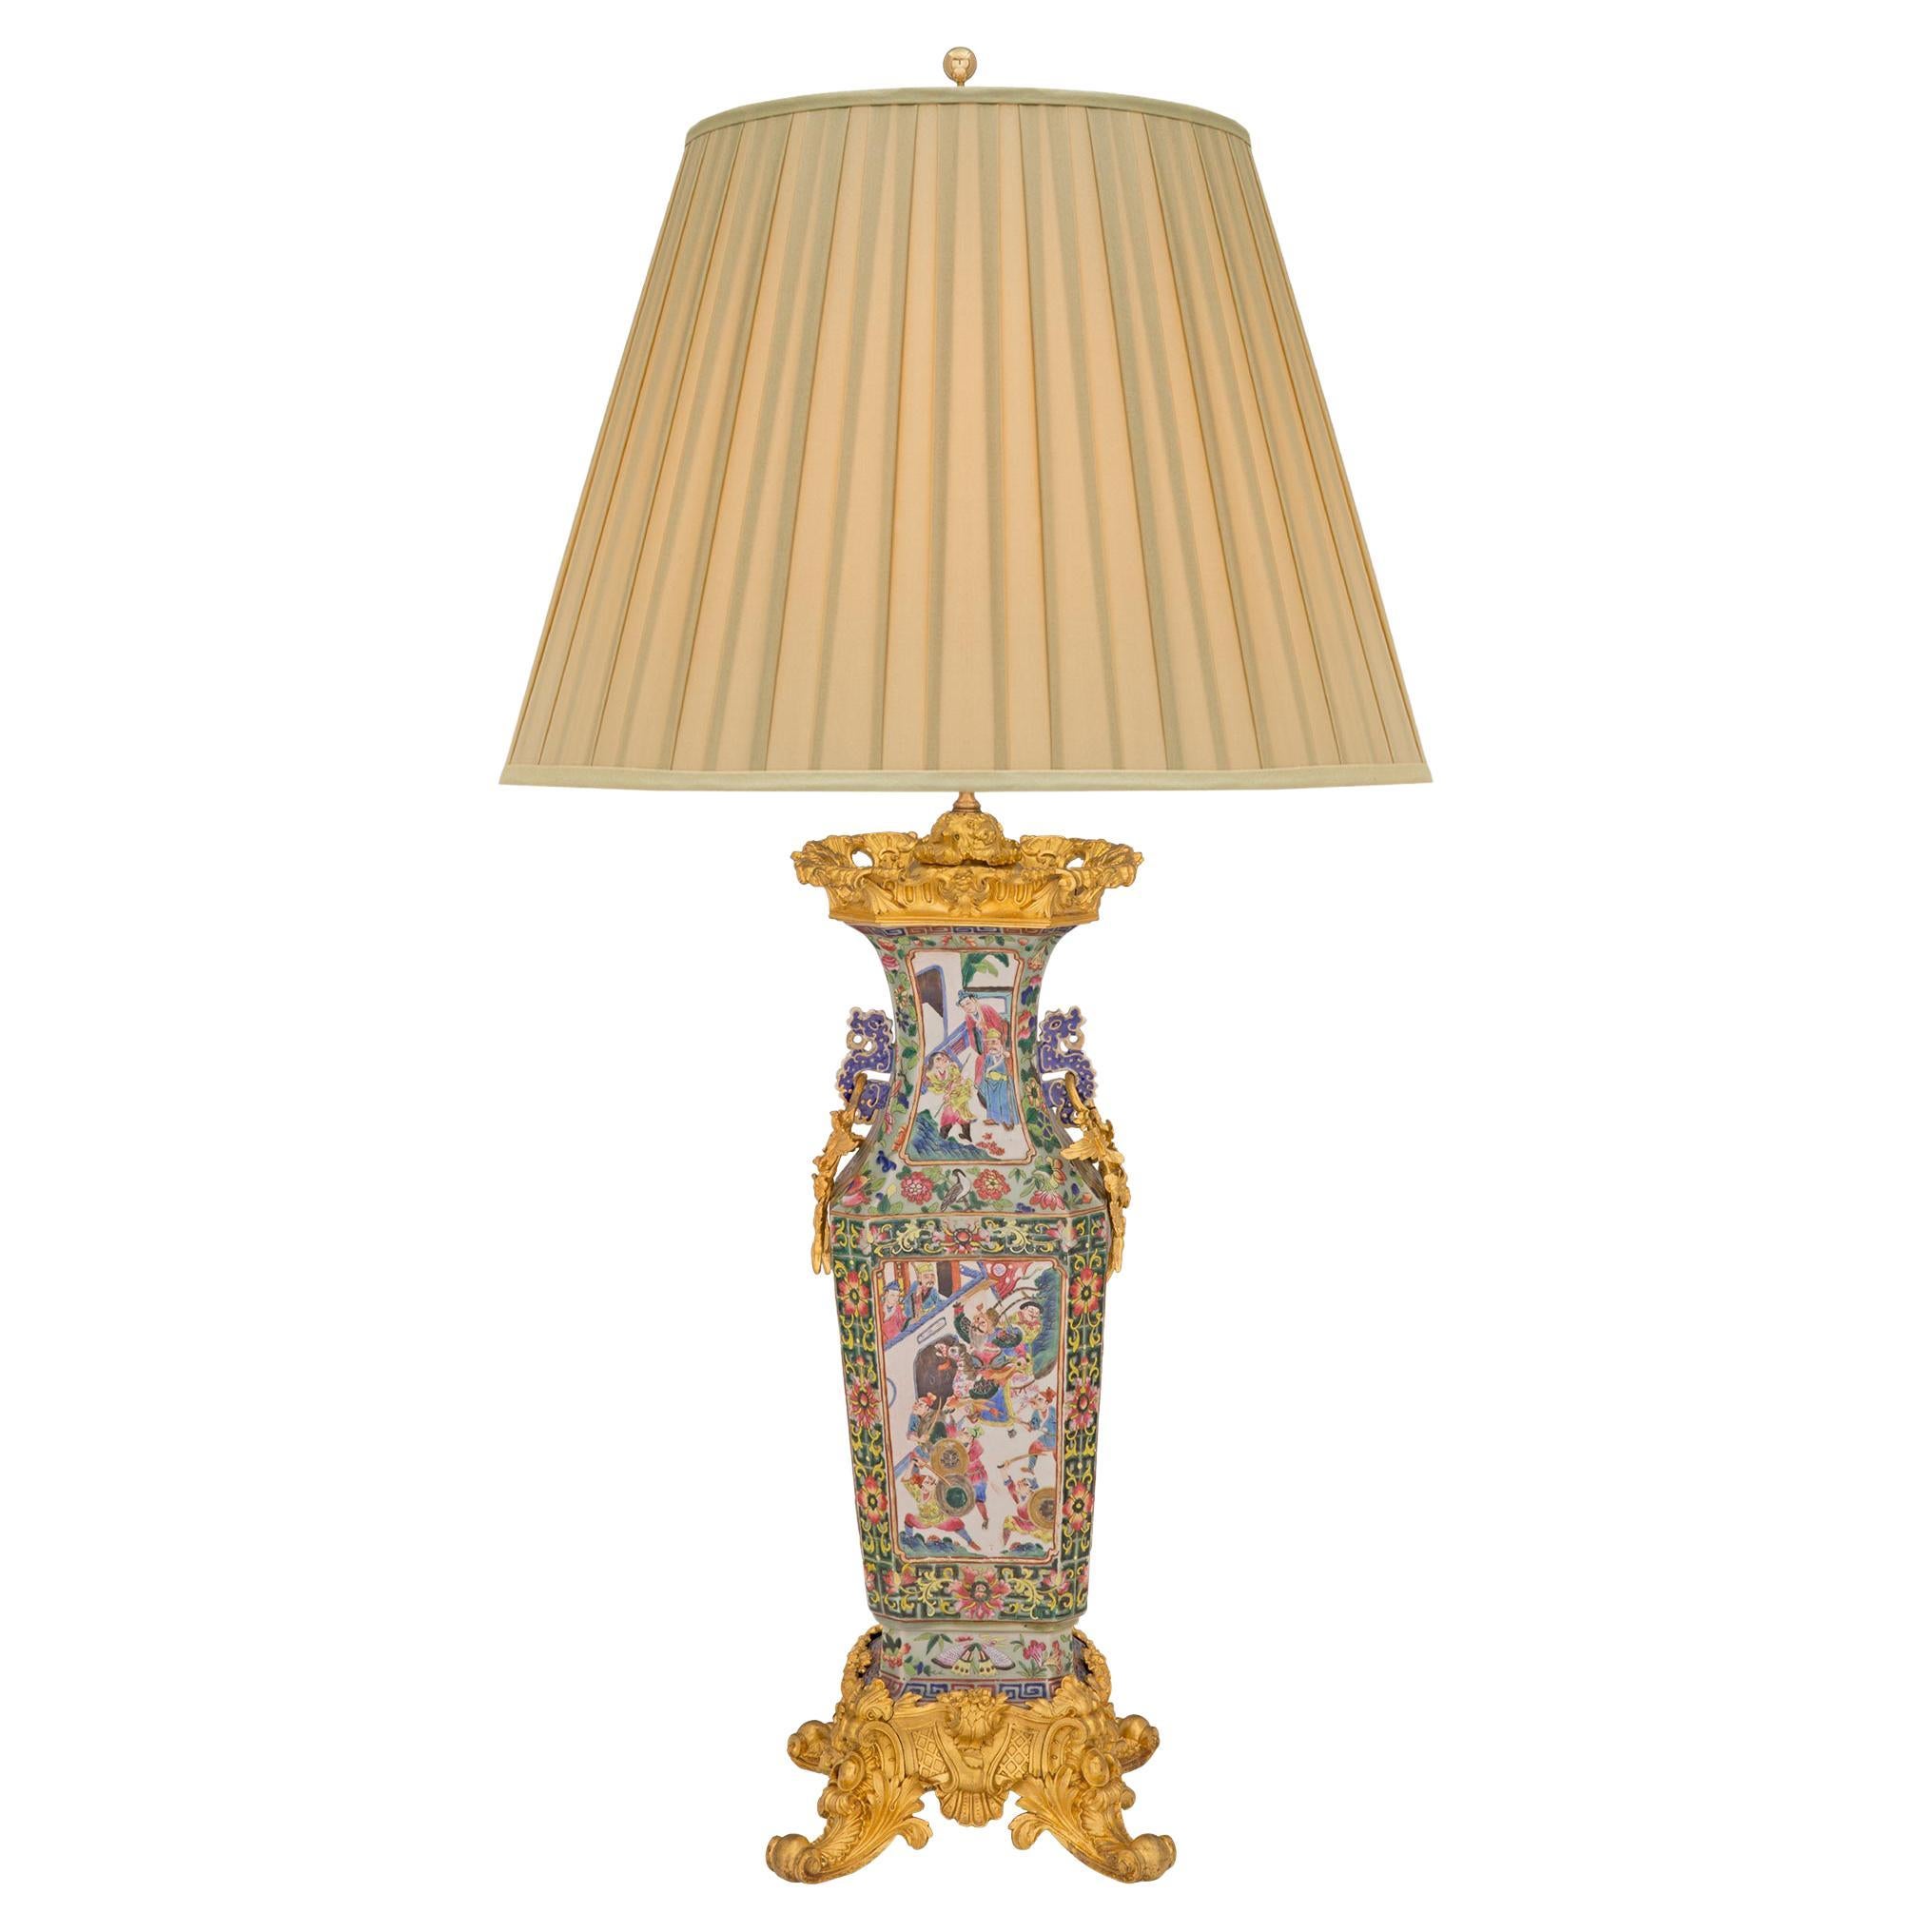 Lampe de style Louis XV du XIXe siècle avec collaboration française et asiatique